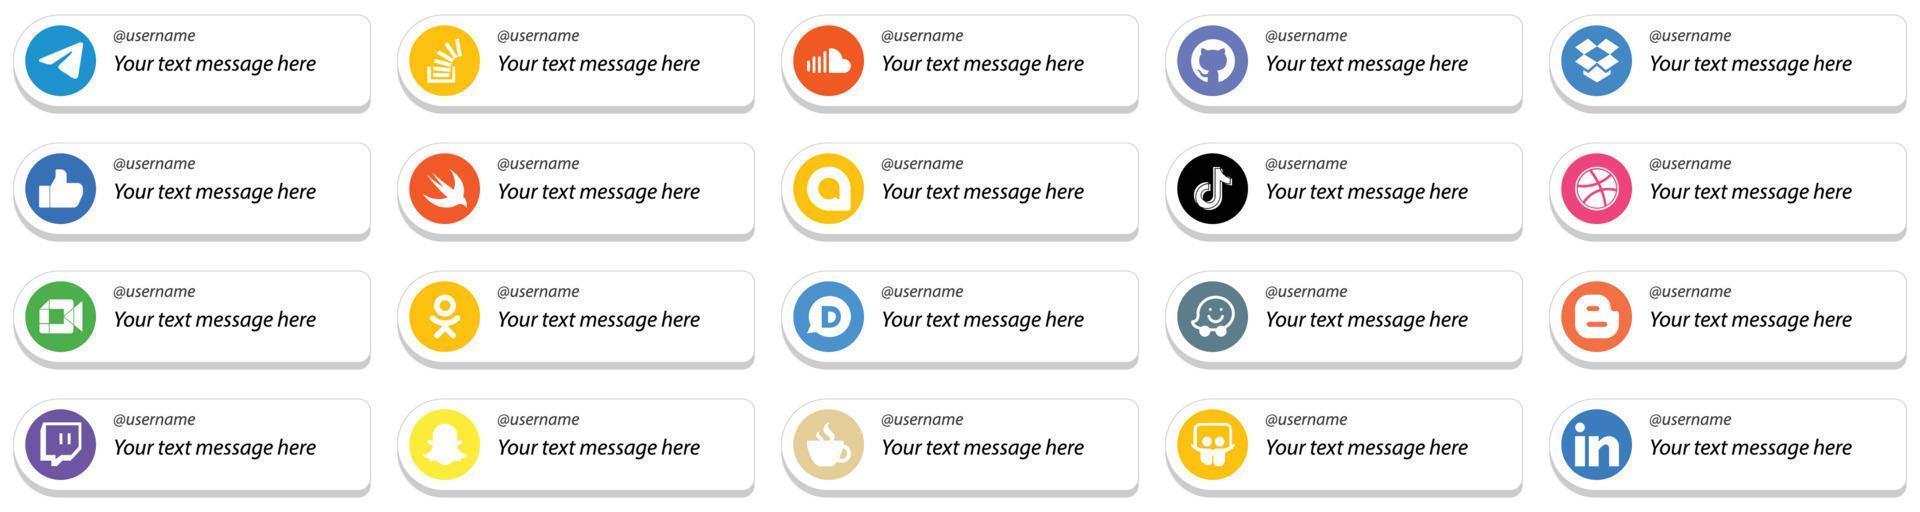 20 carta stile Seguire me sociale media piattaforma icone con costume Messaggio opzione come come douyin. Google allo. suono. veloce e piace icone. alto definizione e versatile vettore